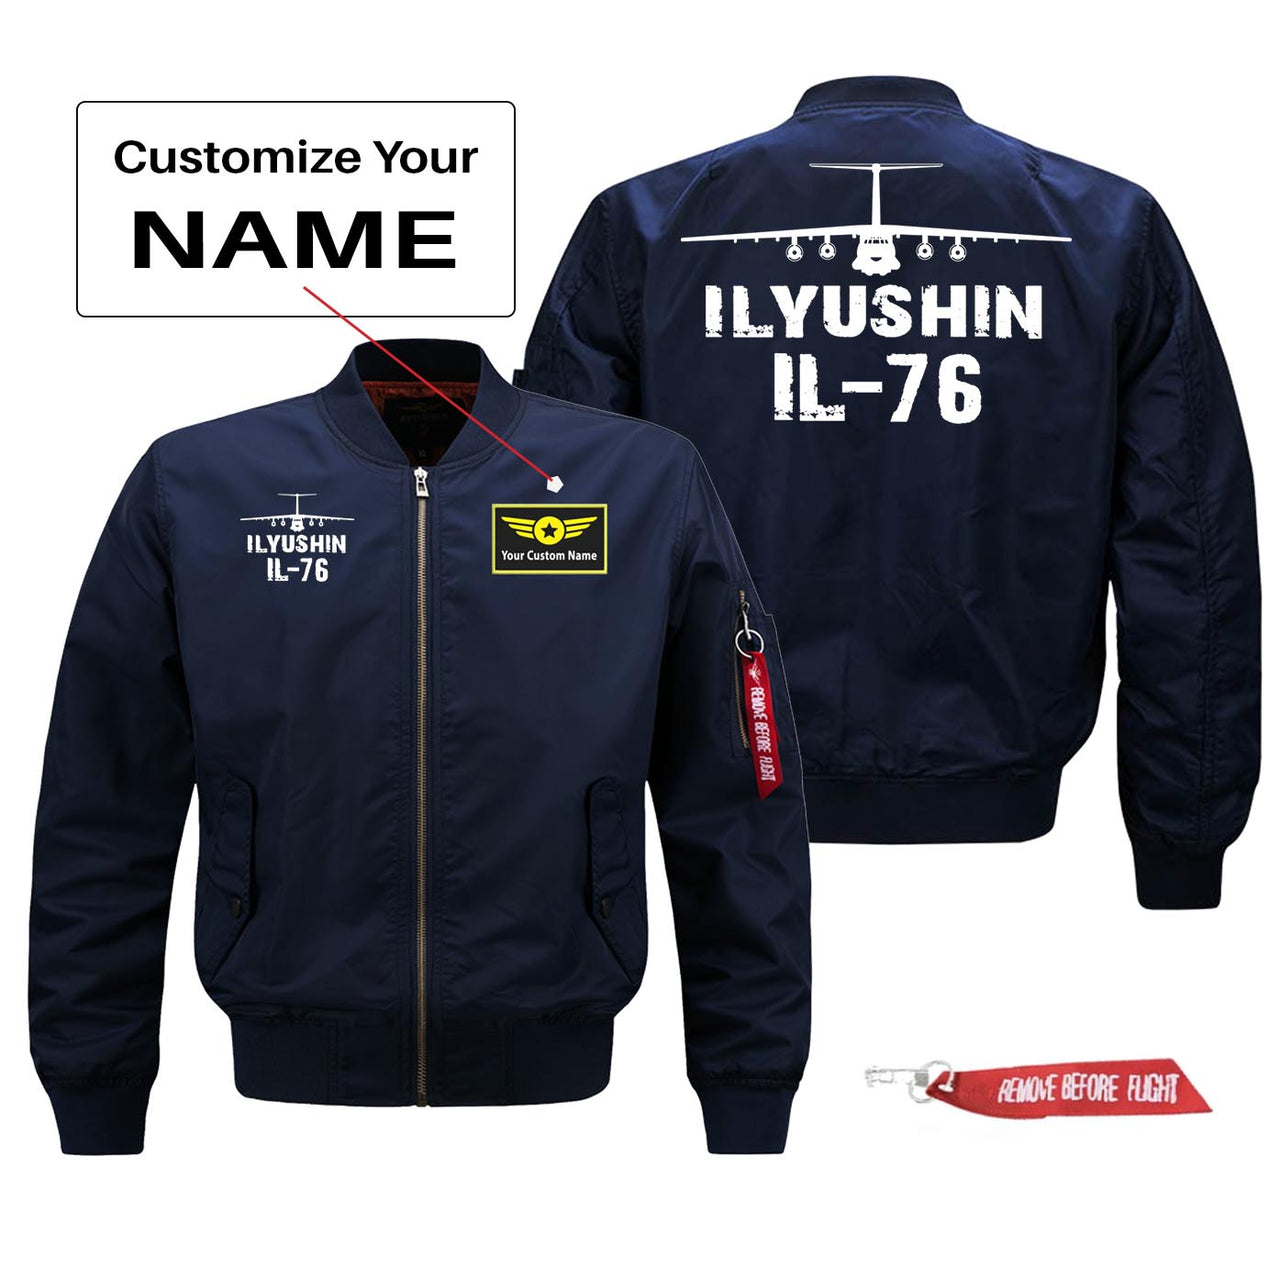 Ilyushin IL-76 Silhouette & Designed Pilot Jackets (Customizable)